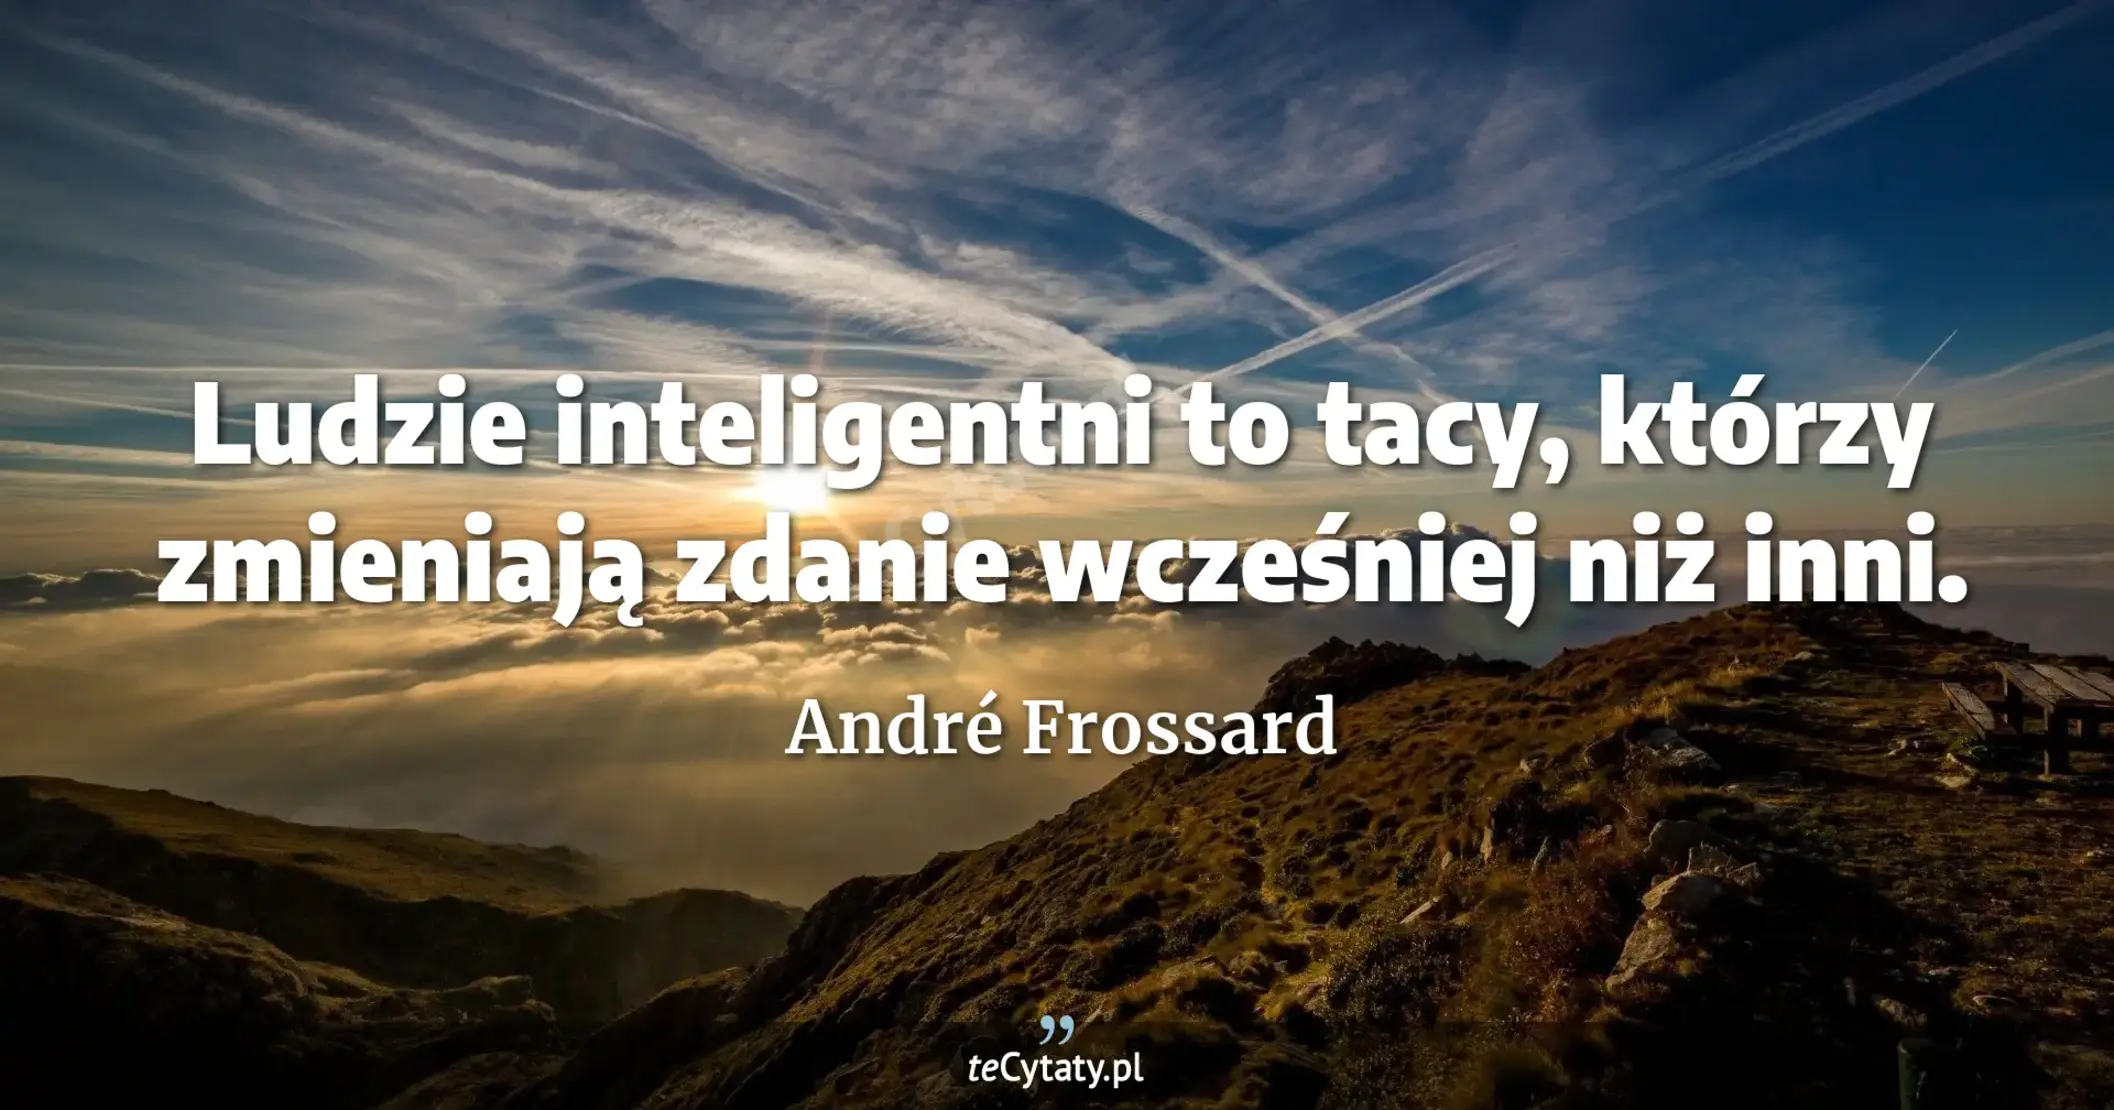 Ludzie inteligentni to tacy, którzy zmieniają zdanie wcześniej niż inni. - André Frossard